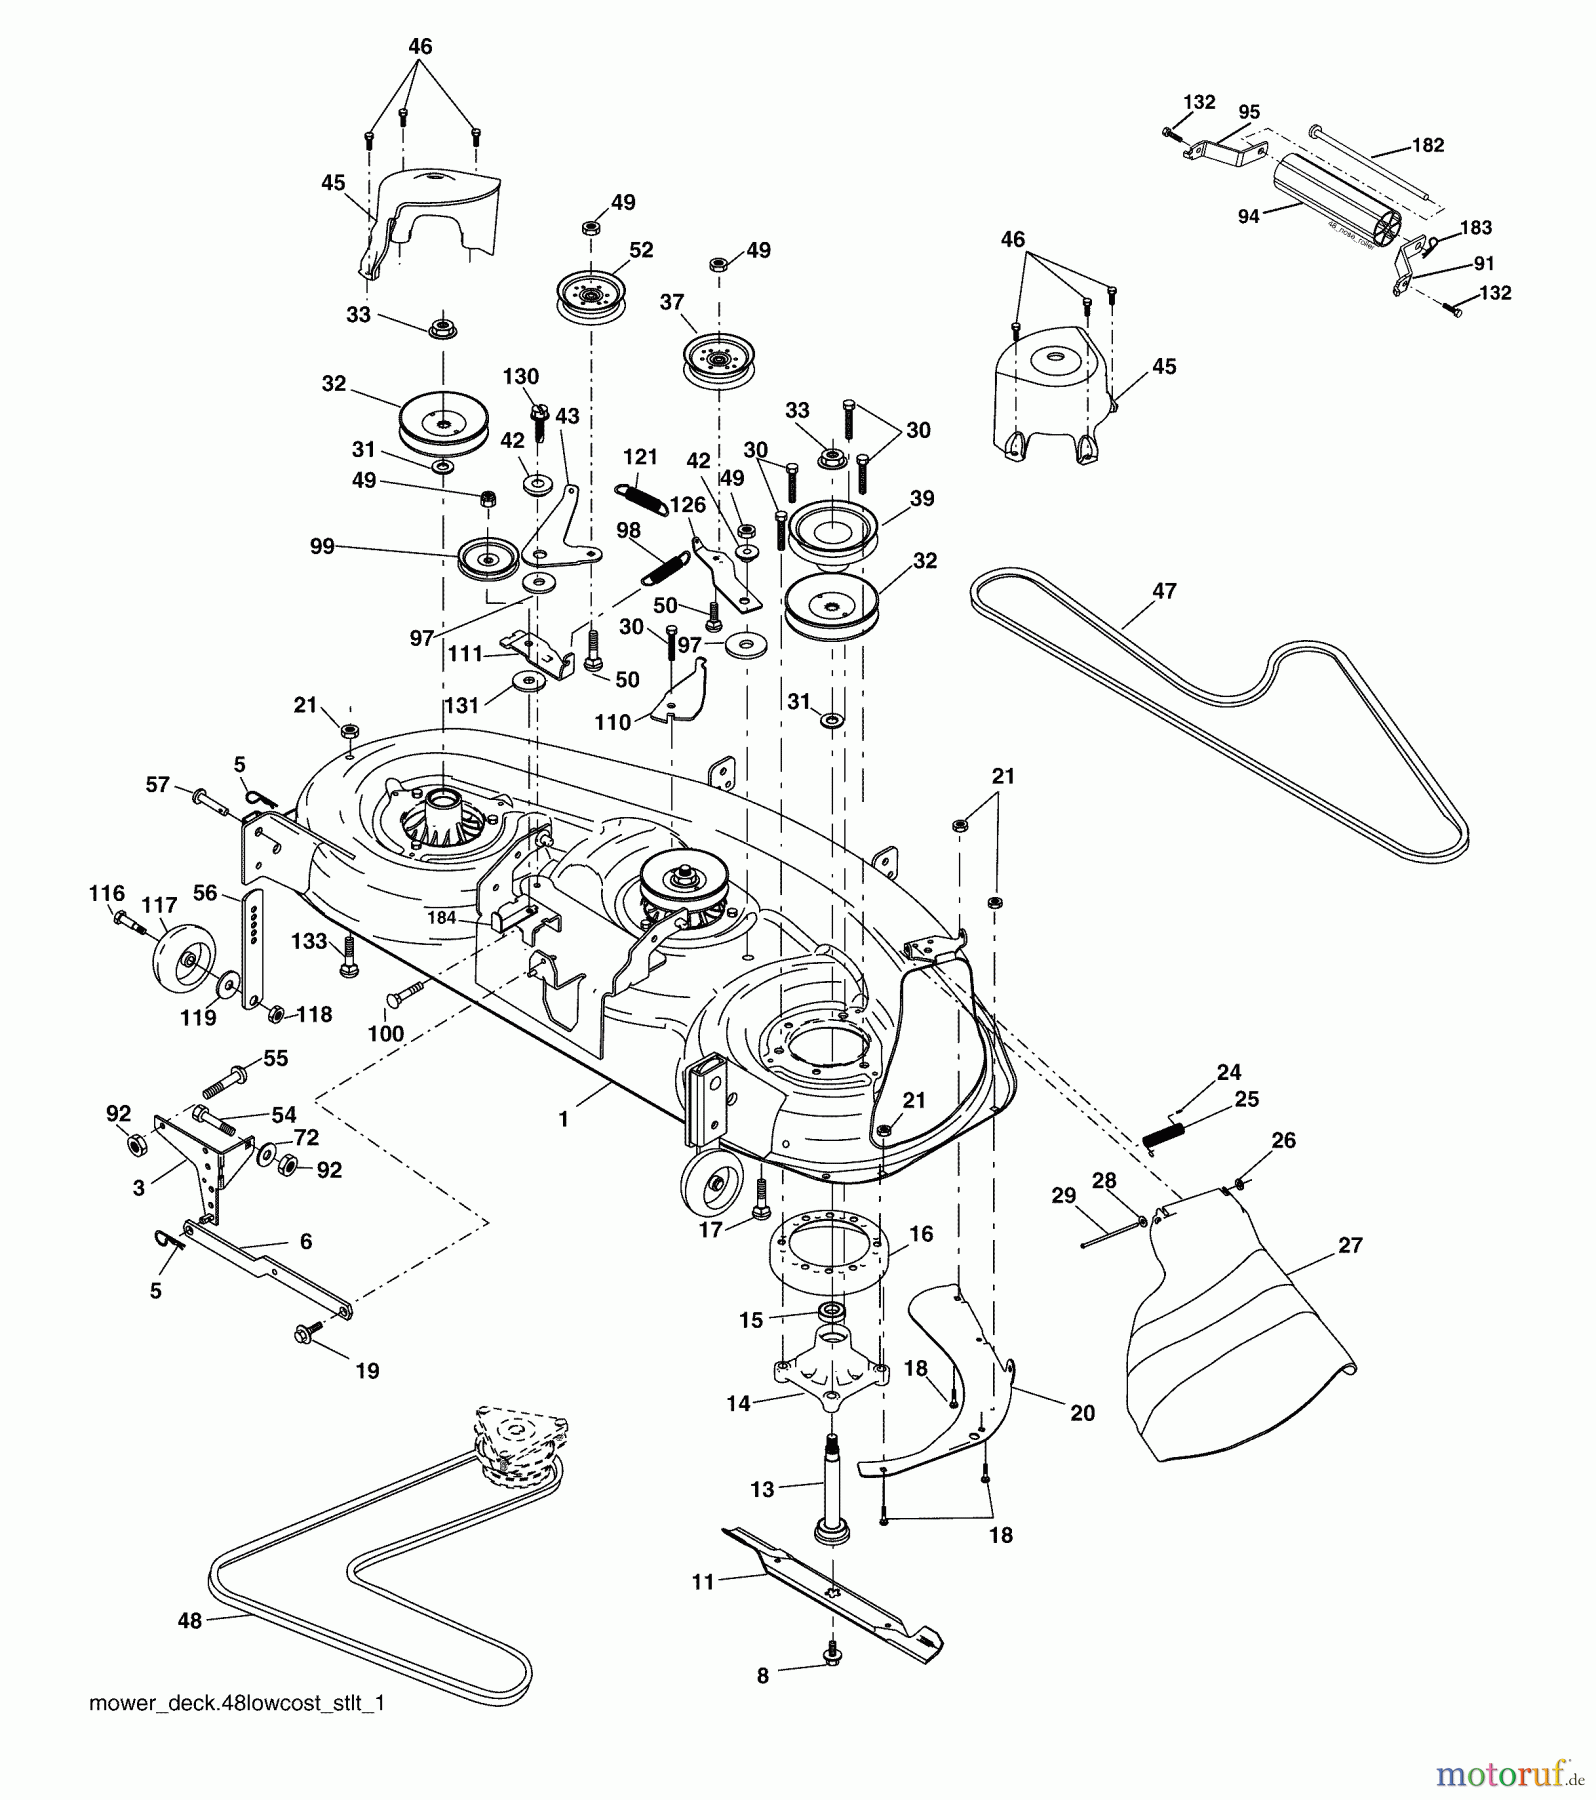  Husqvarna Rasen und Garten Traktoren YTH 2448 (960130007) (917.279081) - Husqvarna Yard Tractor (2005-08 & After) (Sears Craftsman) Mower Deck